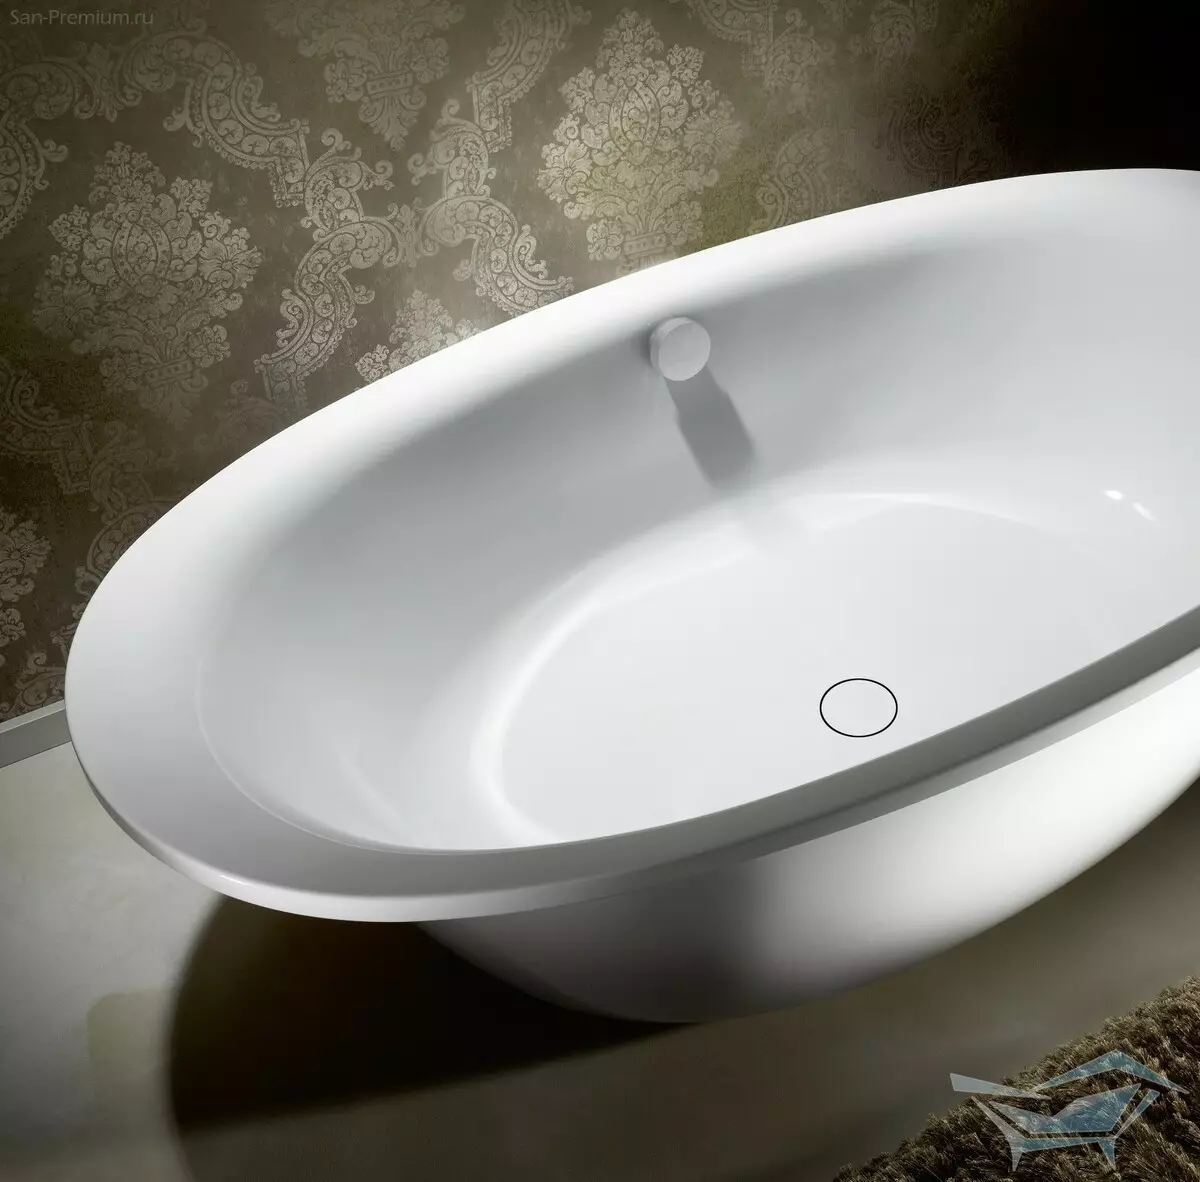 छोटे बाथटब: मिनी स्नान आकार। एक छोटा स्नान चुनने के लिए टिप्स, इंटीरियर में कॉम्पैक्ट स्नान के उदाहरण 10223_52